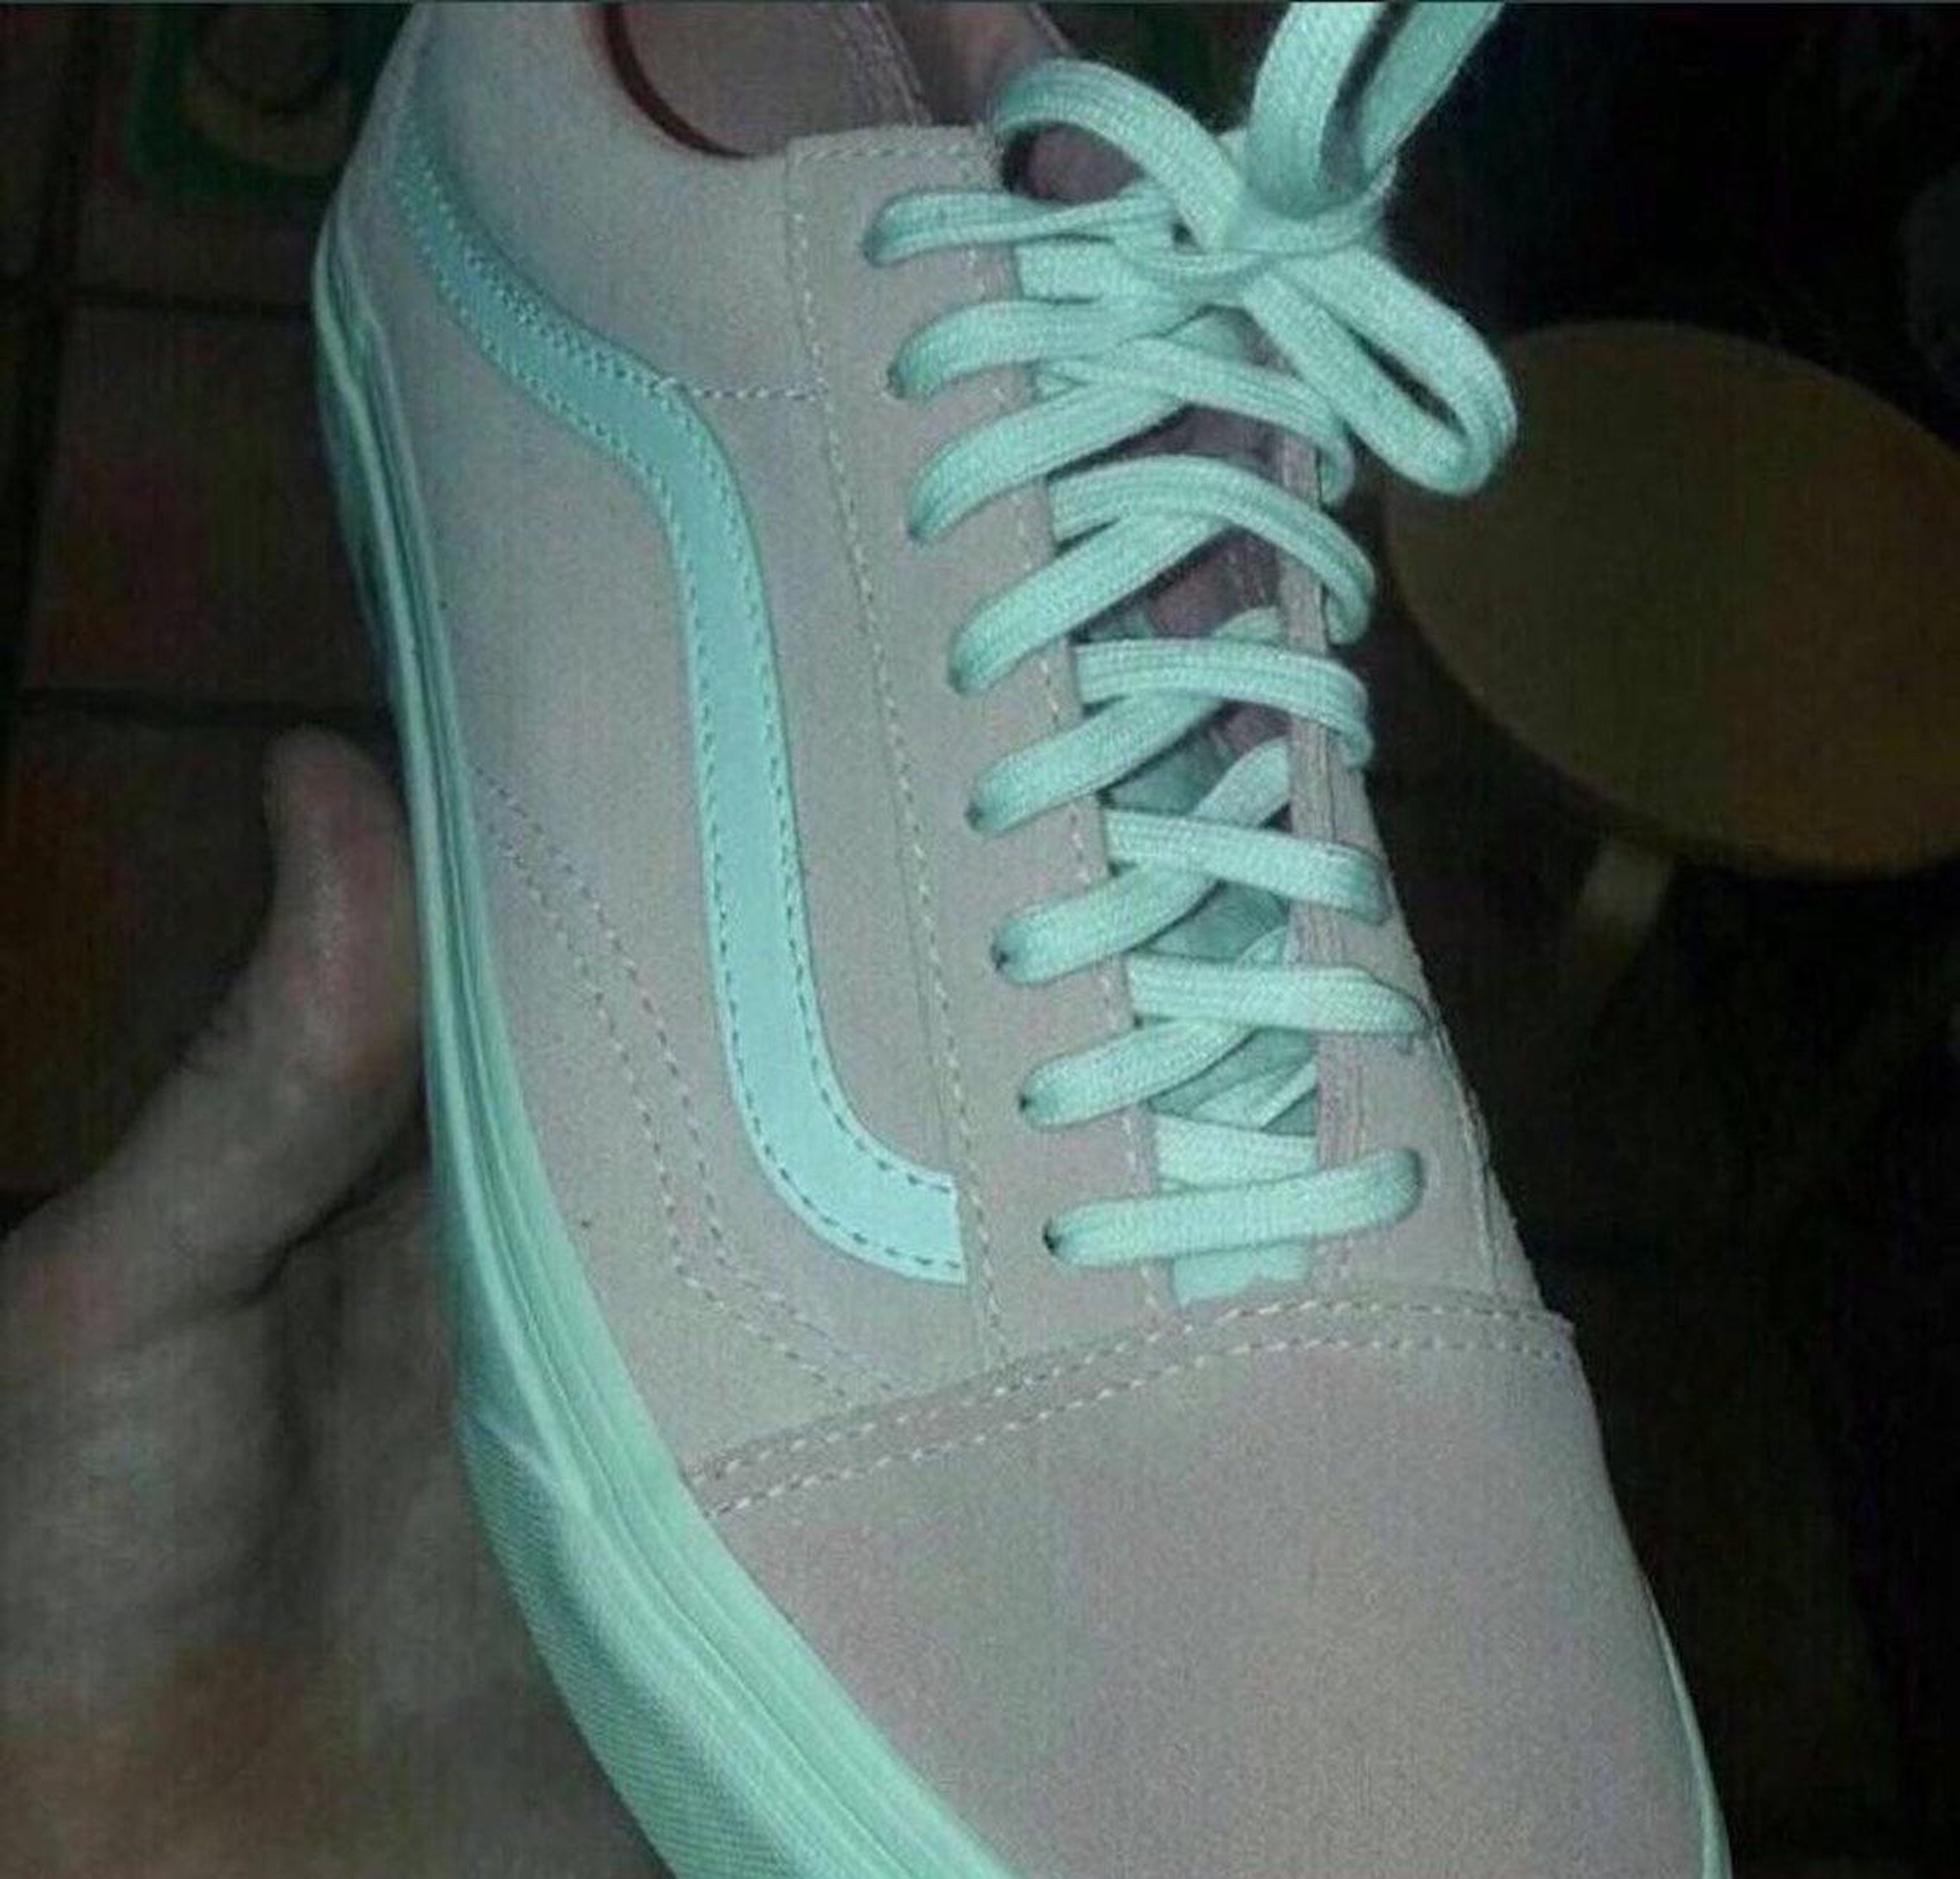 ¿Son estas zapatillas de color rosa y blanco o gris?